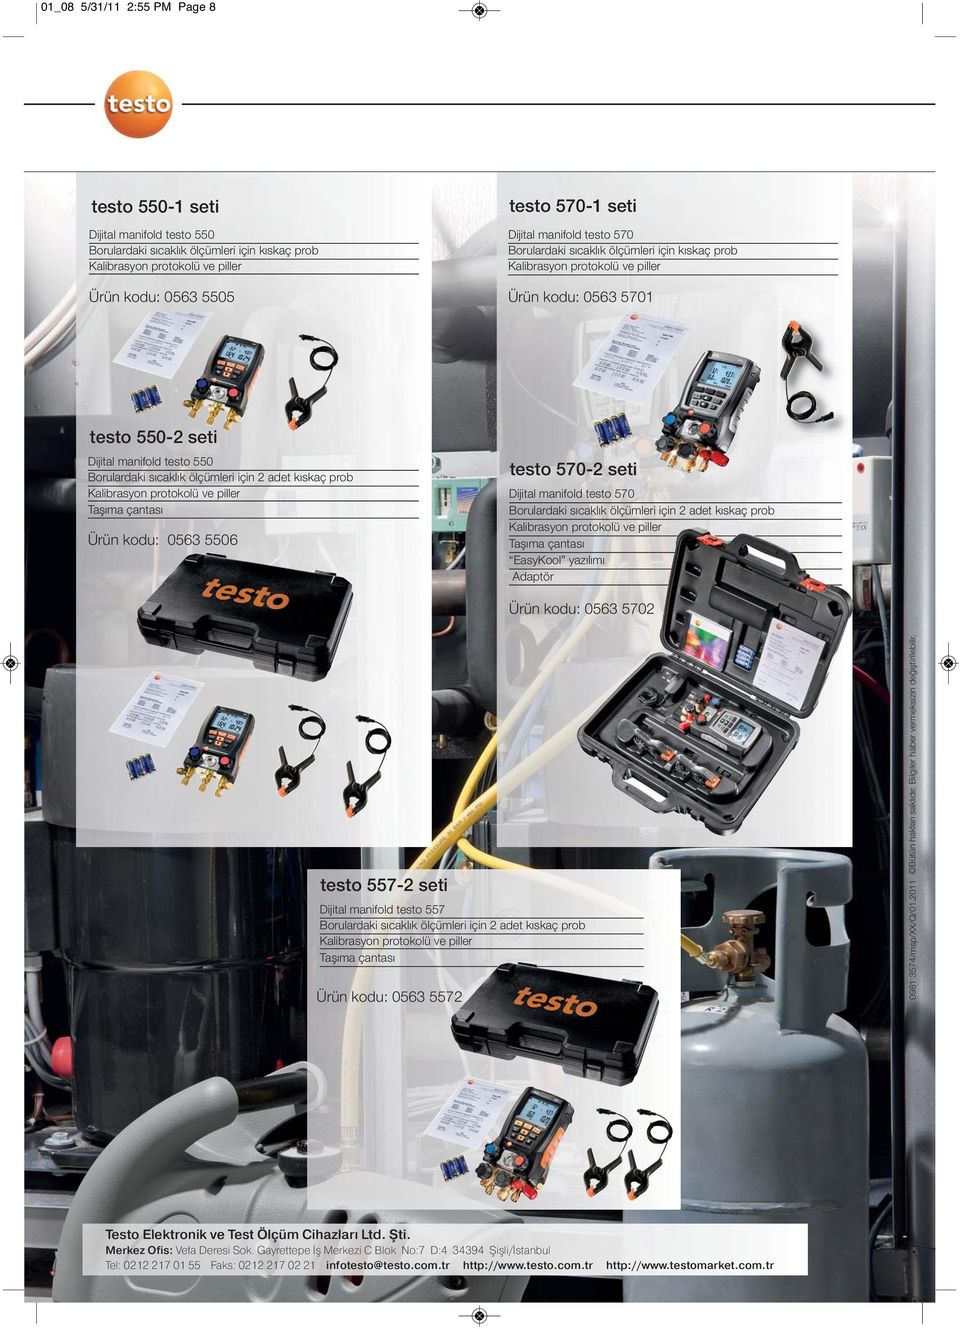 570-2 seti Dijital manifold testo 570 Borulardaki sıcaklık ölçümleri için 2 adet kıskaç prob Taşıma çantası EasyKool yazılımı Adaptör Ürün kodu: 0563 5702 testo 557-2 seti Dijital manifold testo 557